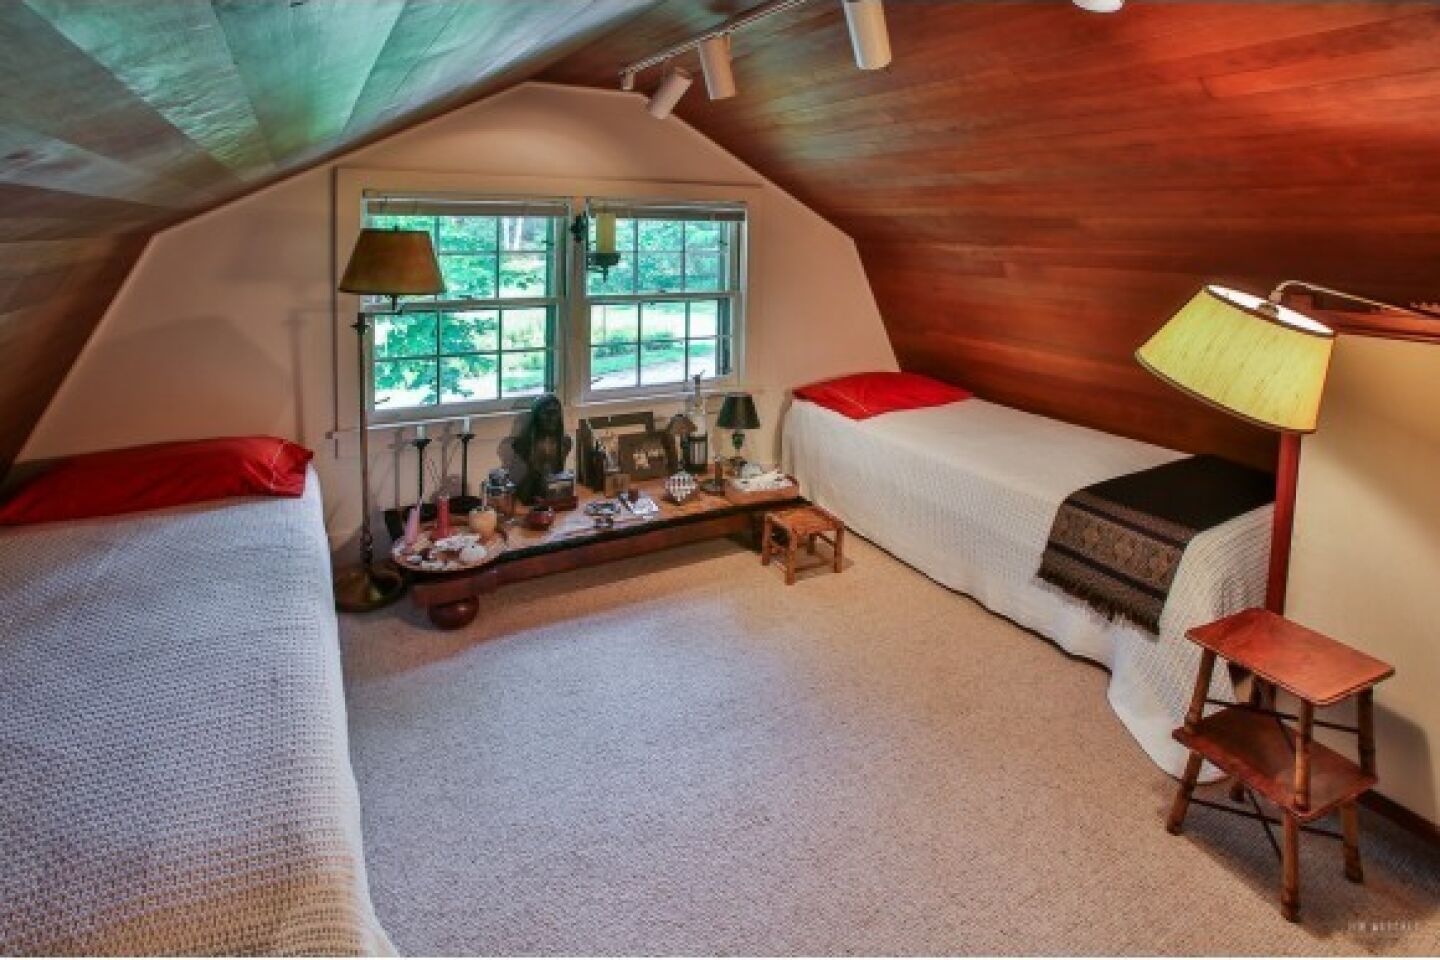 J.D. Salinger's home for sale - guest bedroom